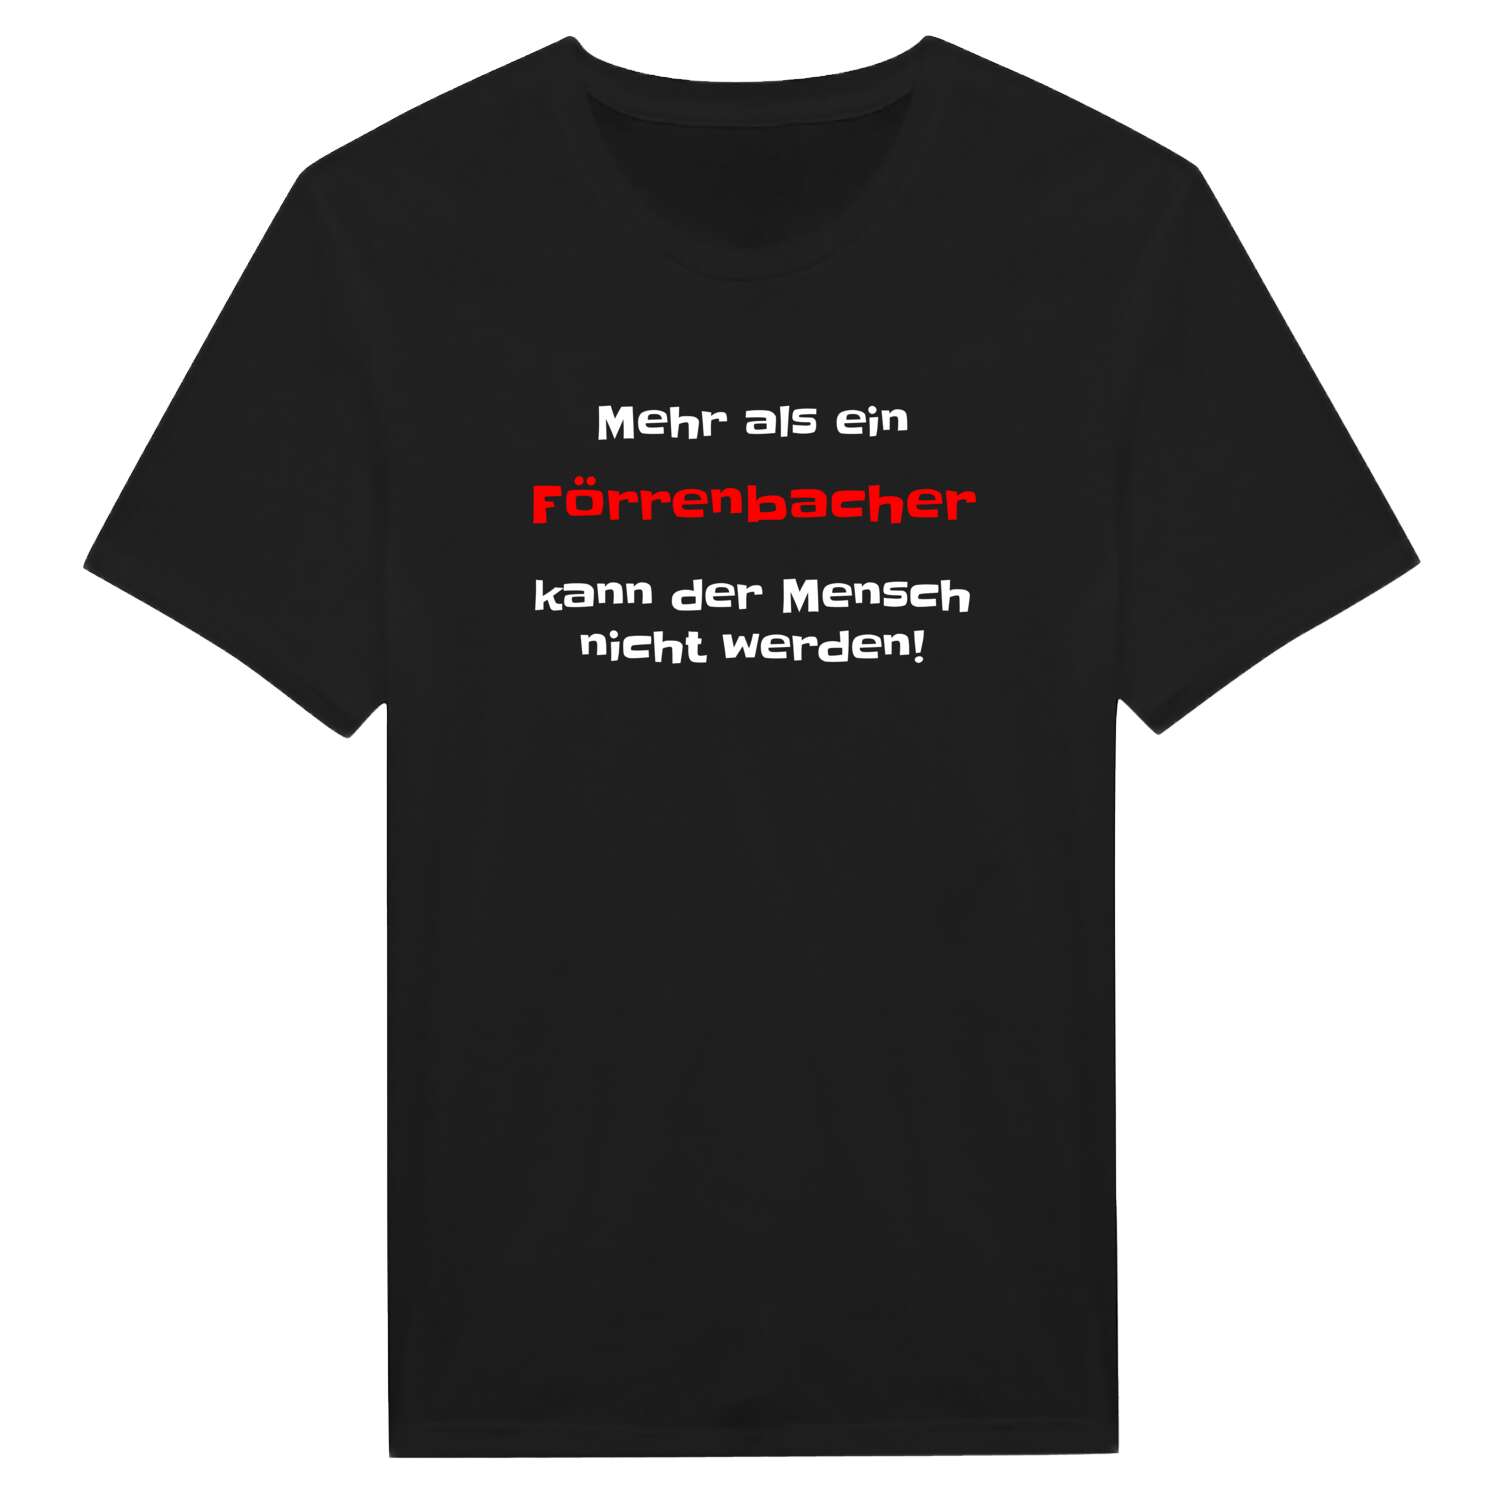 Förrenbach T-Shirt »Mehr als ein«